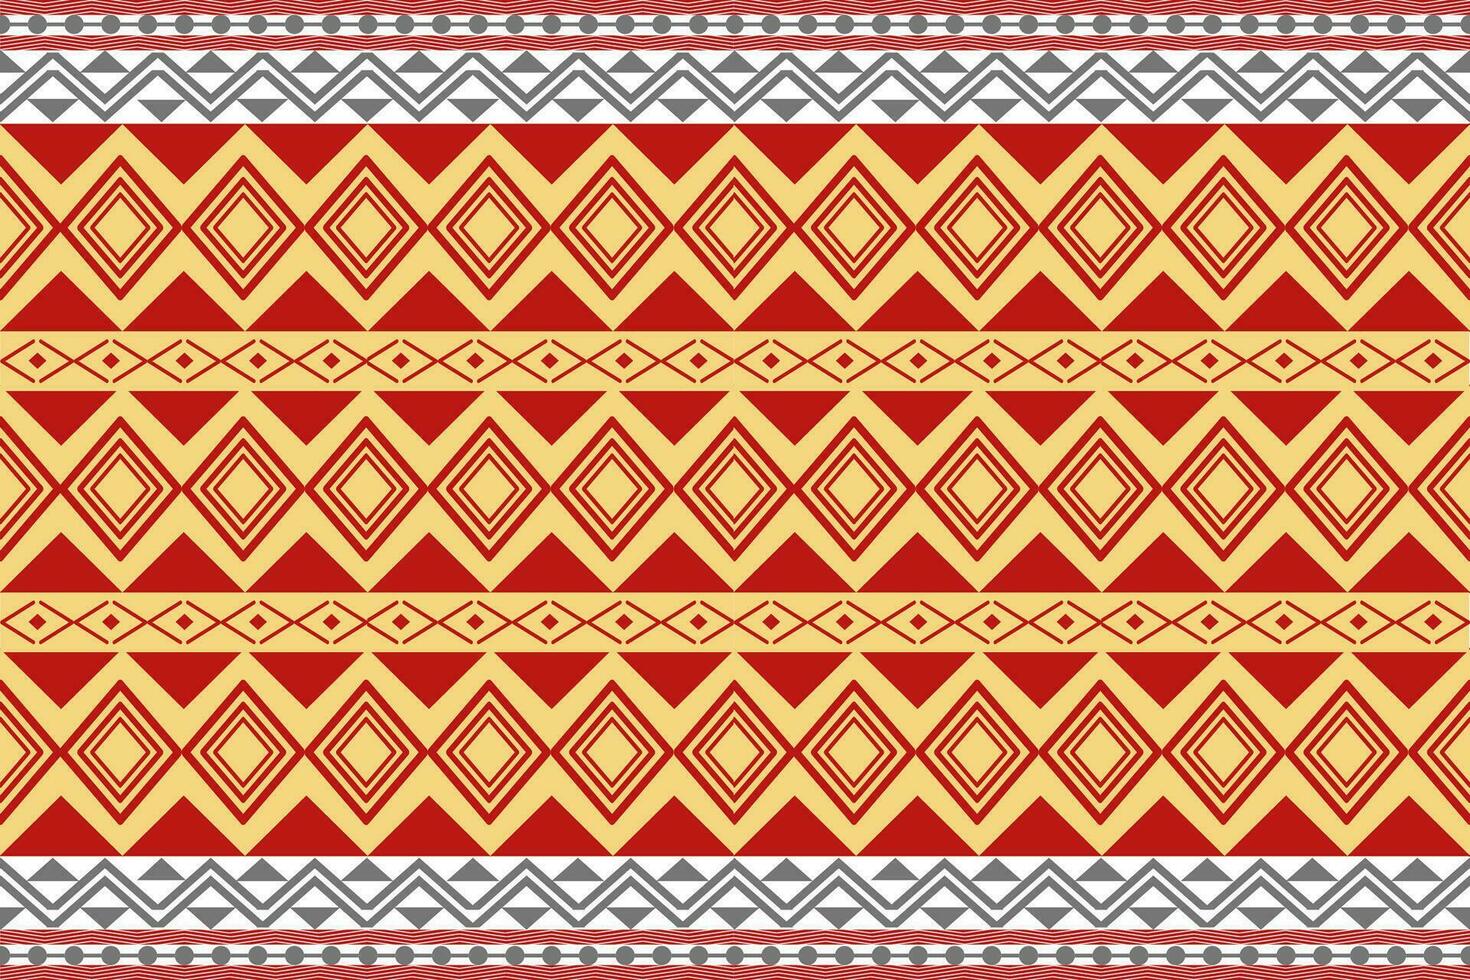 etnisk geometrisk sömlös mönster. design för tyg, kläder, dekorativ papper, omslag, broderi, illustration, vektor, stam- smattra vektor